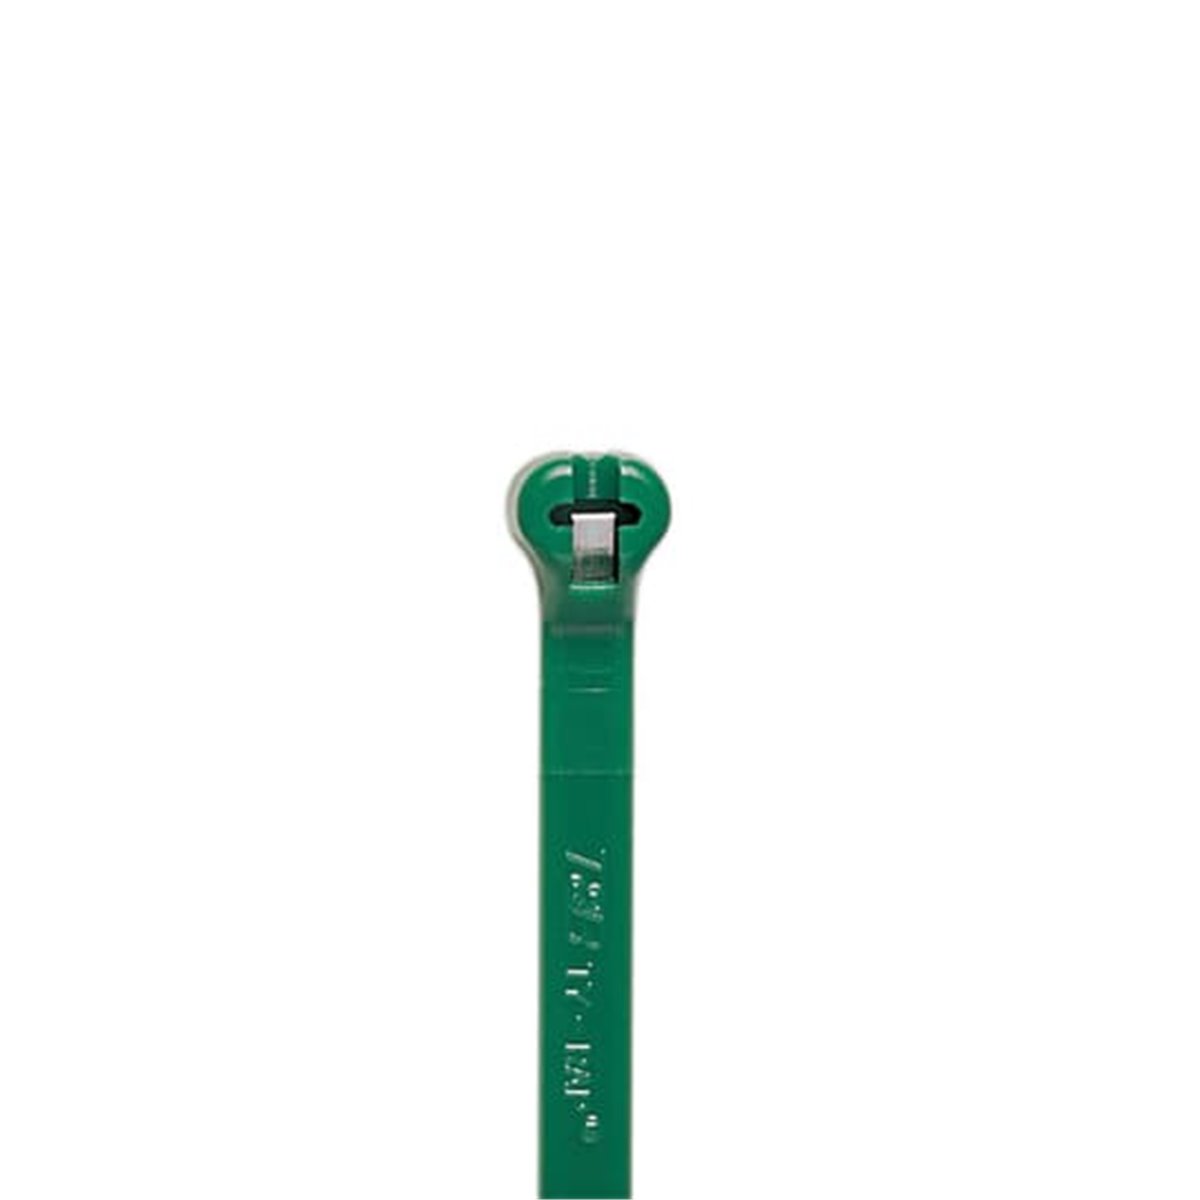 TY26M-5 Opaska kablowa TY-RAP, Zielony,  opak. 1000 szt. 7TAG009160R0028